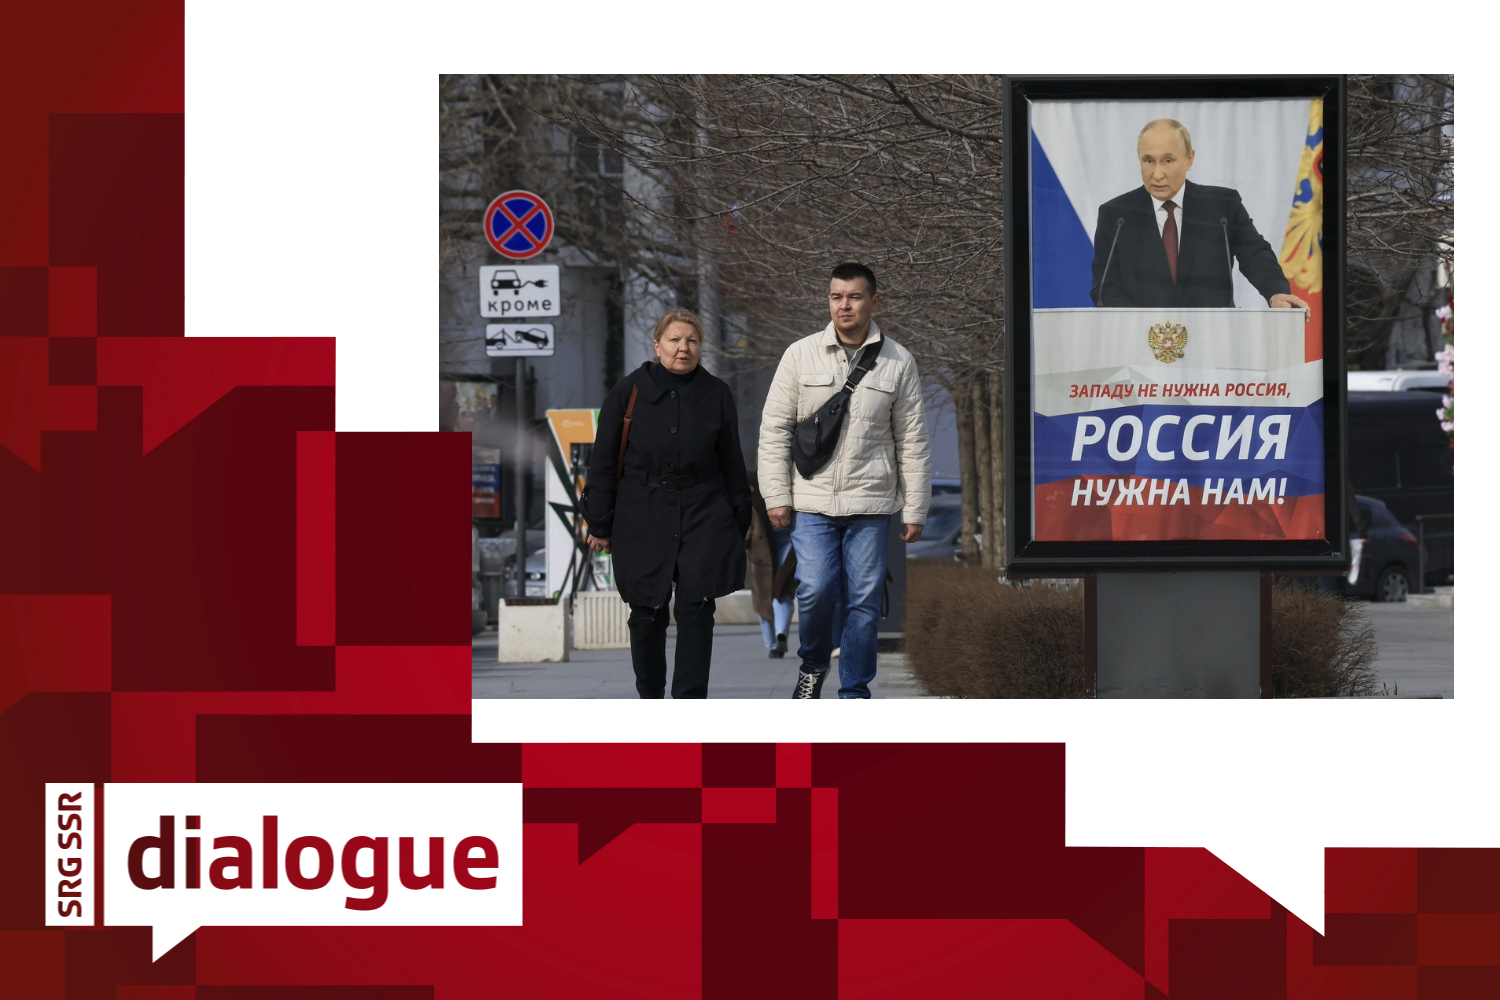 Dans une rue de Sébastopol, en Crimée, des gens passent devant un panneau d'affichage représentant le président russe Vladimir Poutine et portant la mention "L'Occident n'a pas besoin de la Russie, nous avons besoin de la Russie",